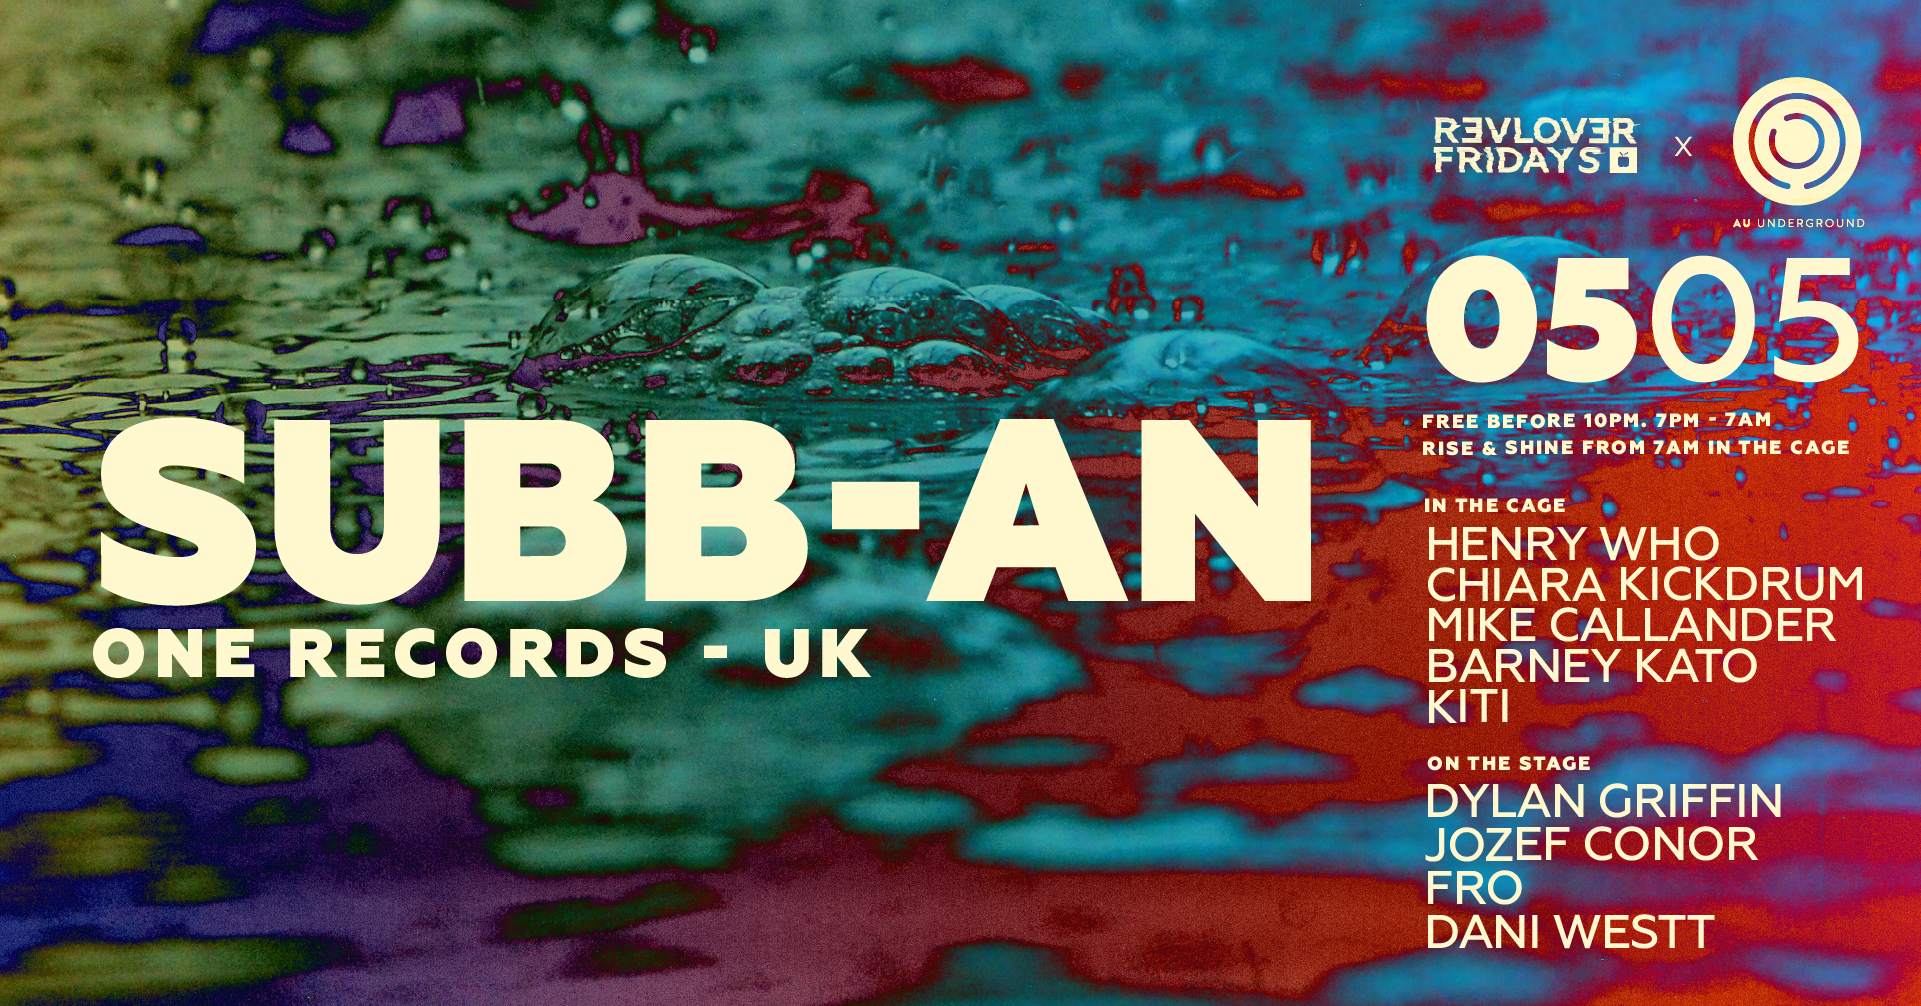 Subb-an (UK) — AU Underground & Revolver Fridays - Página frontal